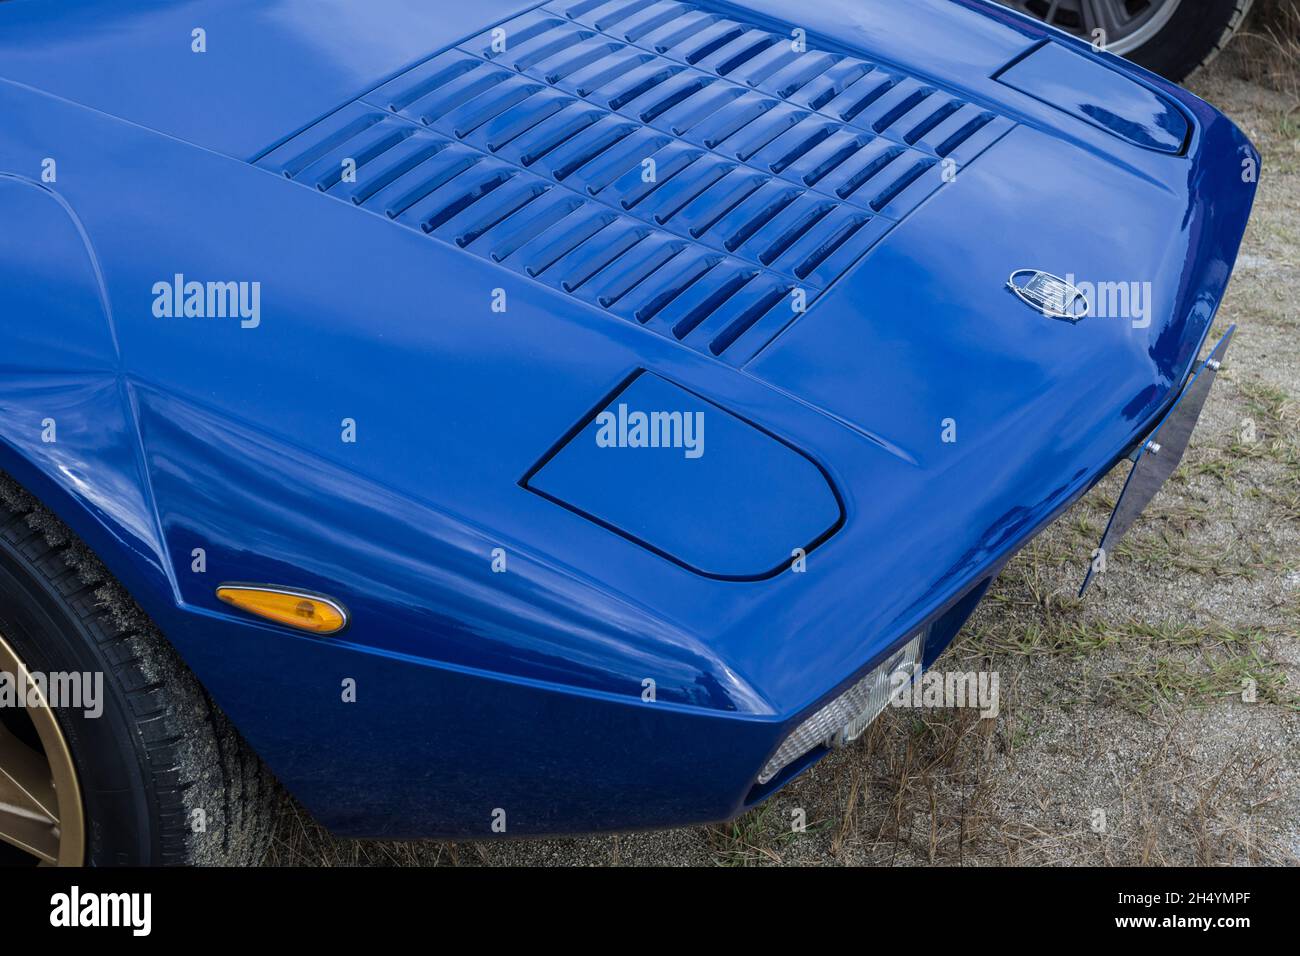 Nahaufnahme der Motorhaube eines blauen Lancia Stratos HF Stradale klassischen italienischen Sport-Rallye-Autos. Stockfoto